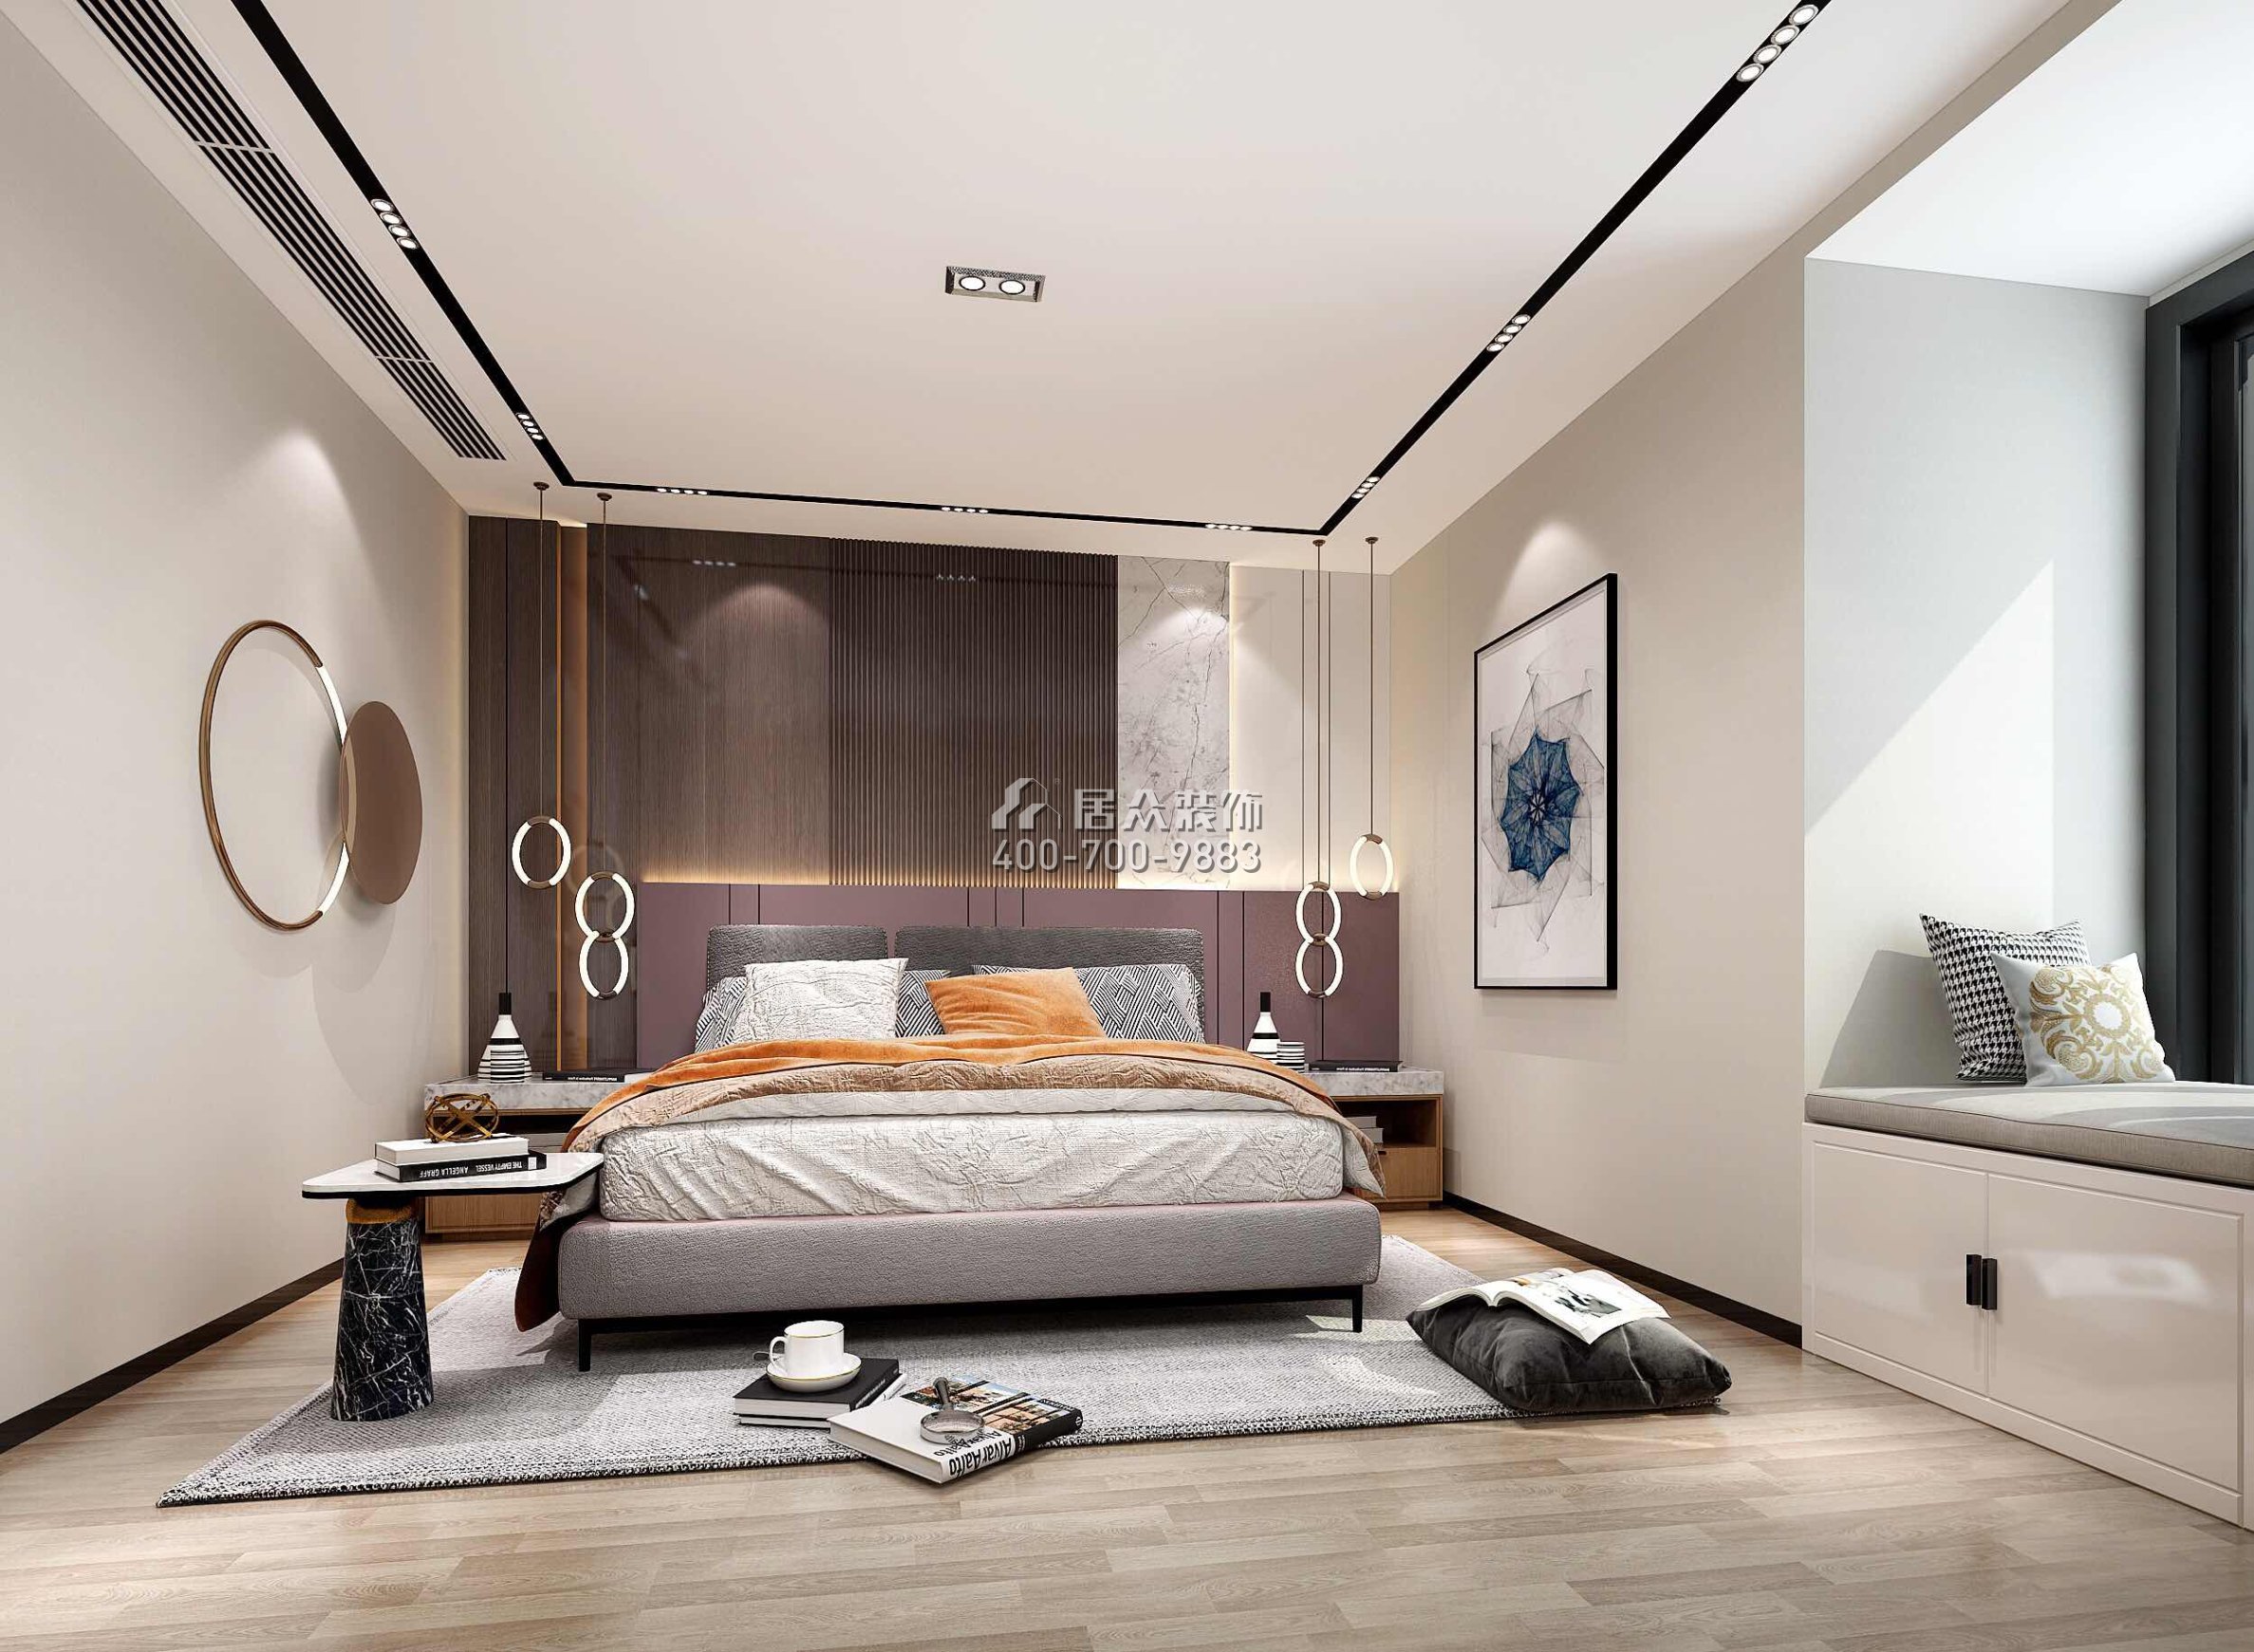 华润小径湾110平方米现代简约风格平层户型卧室装修效果图